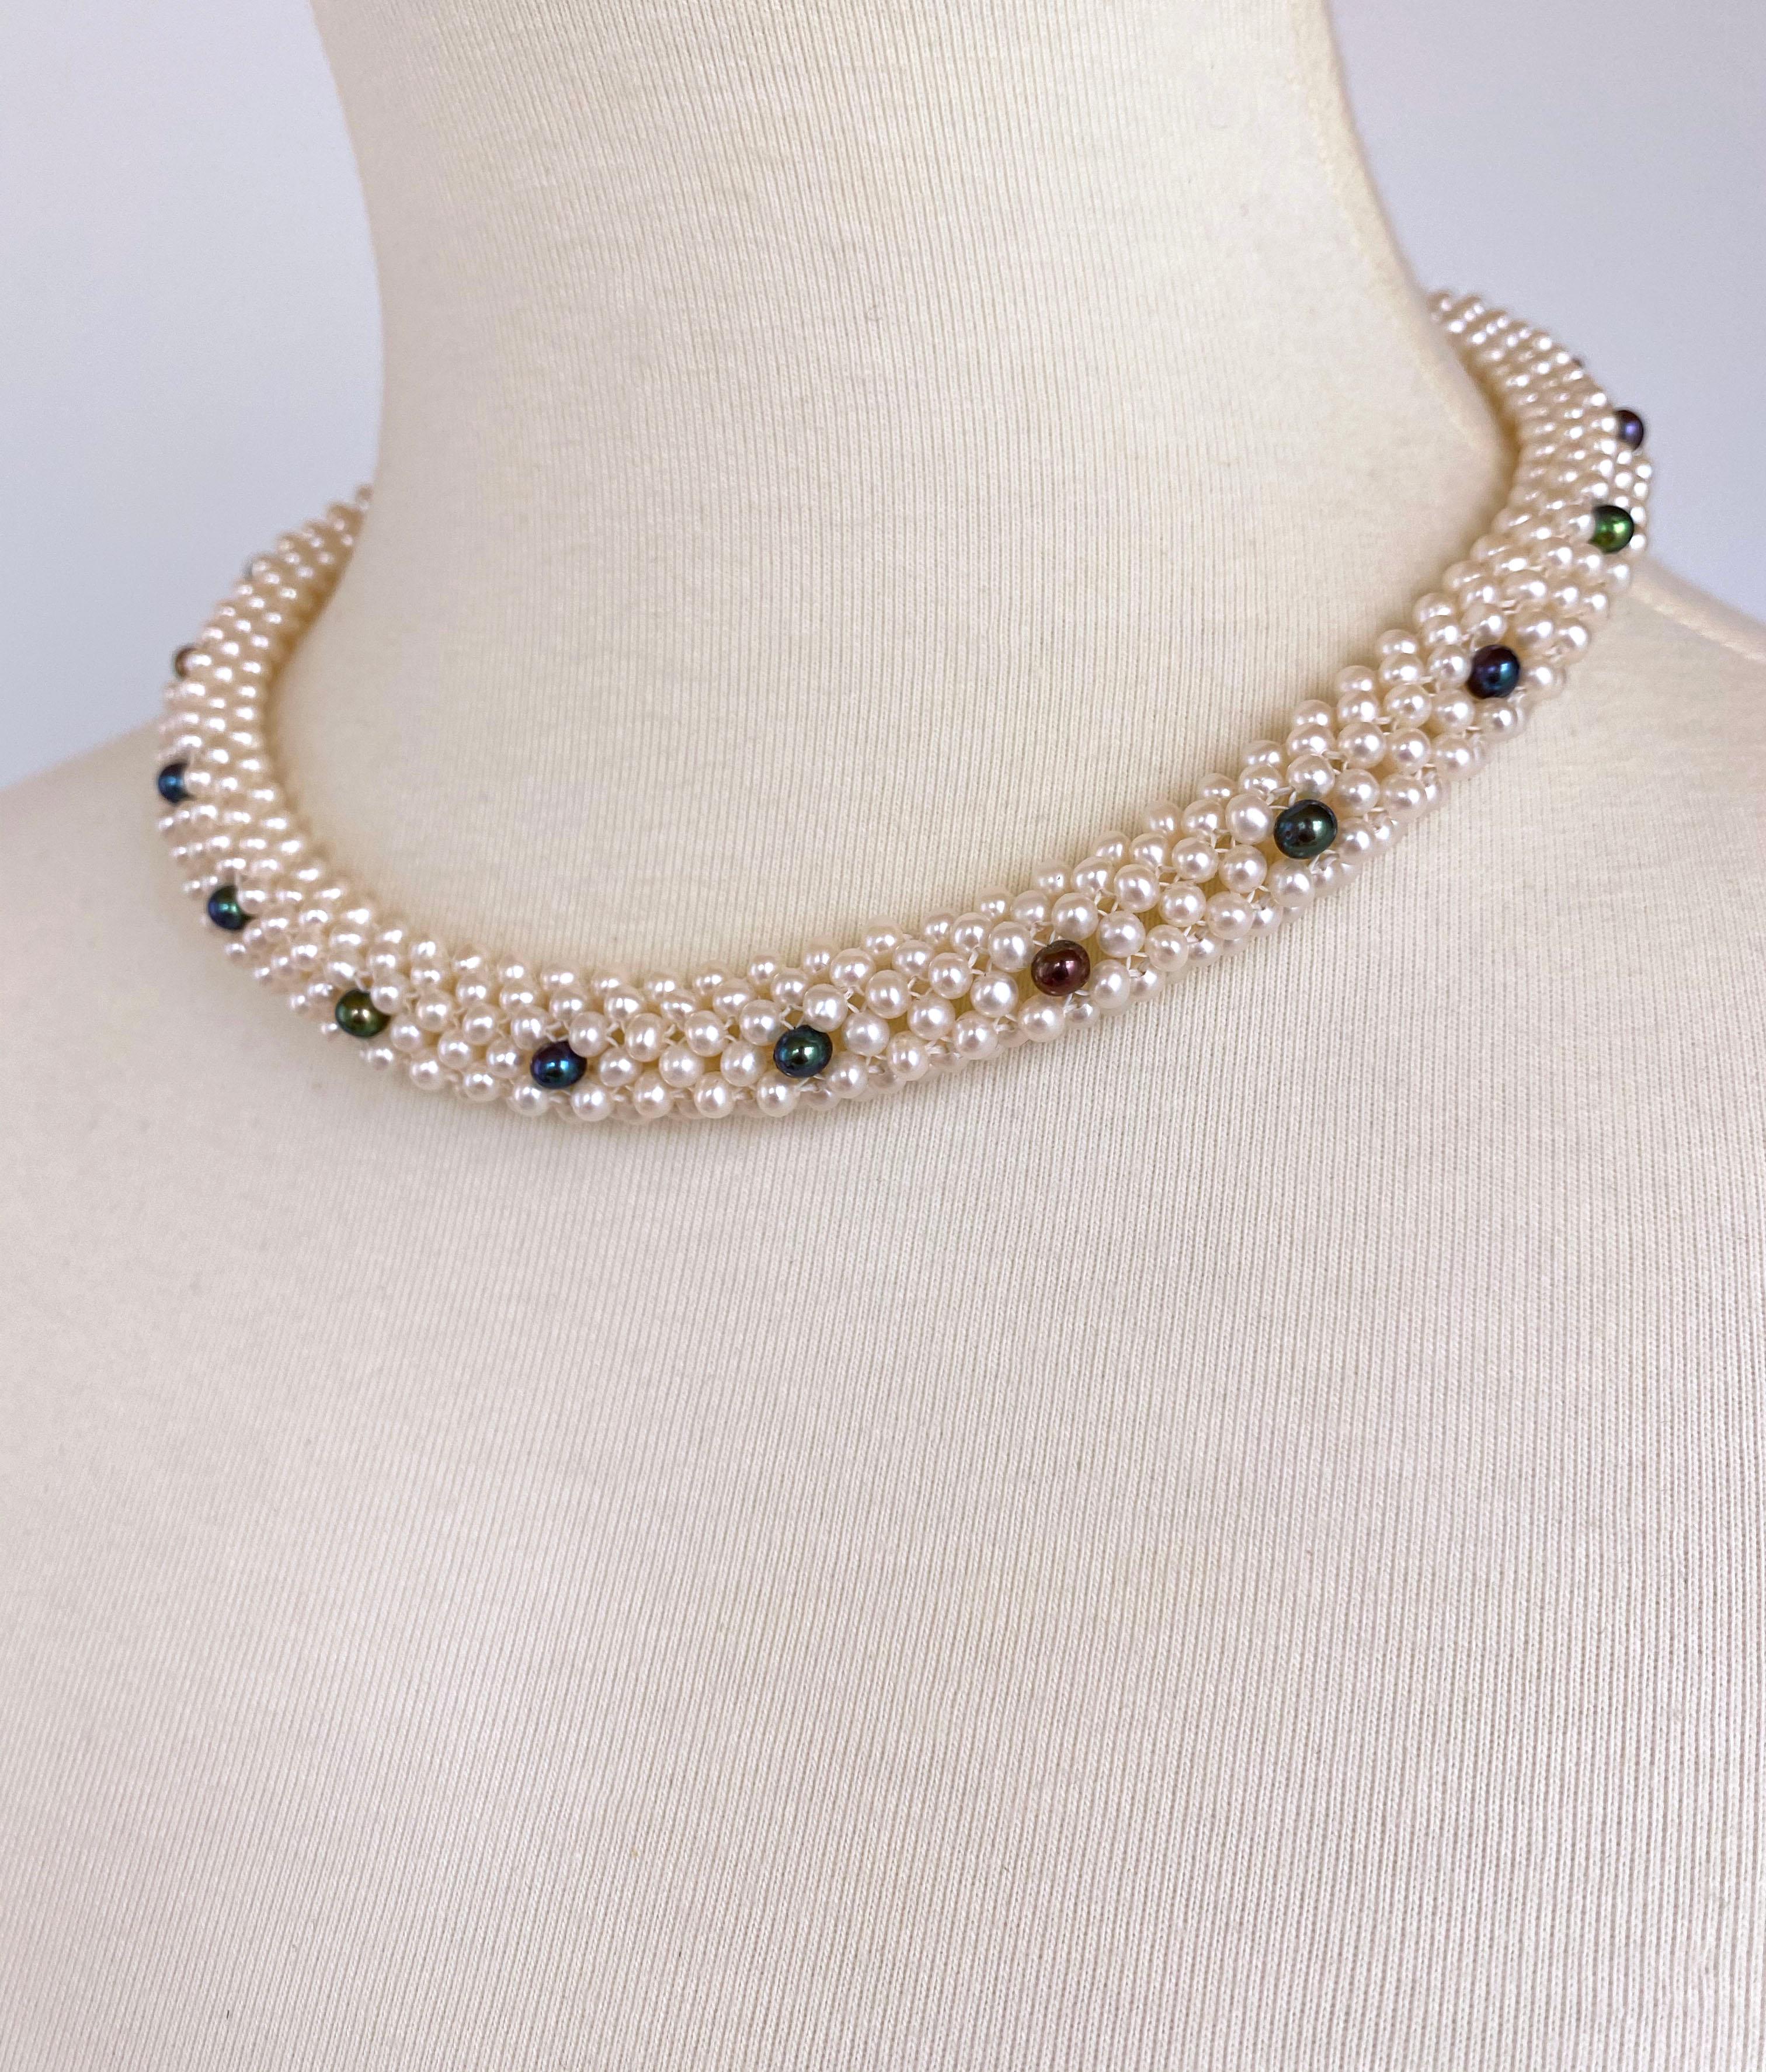 Magnifique pièce réalisée par Marina J. Ce collier est composé de magnifiques perles noires et blanches très brillantes, toutes tissées à la main de façon complexe pour former un motif de dentelle en trois dimensions. Comme le montrent les photos,